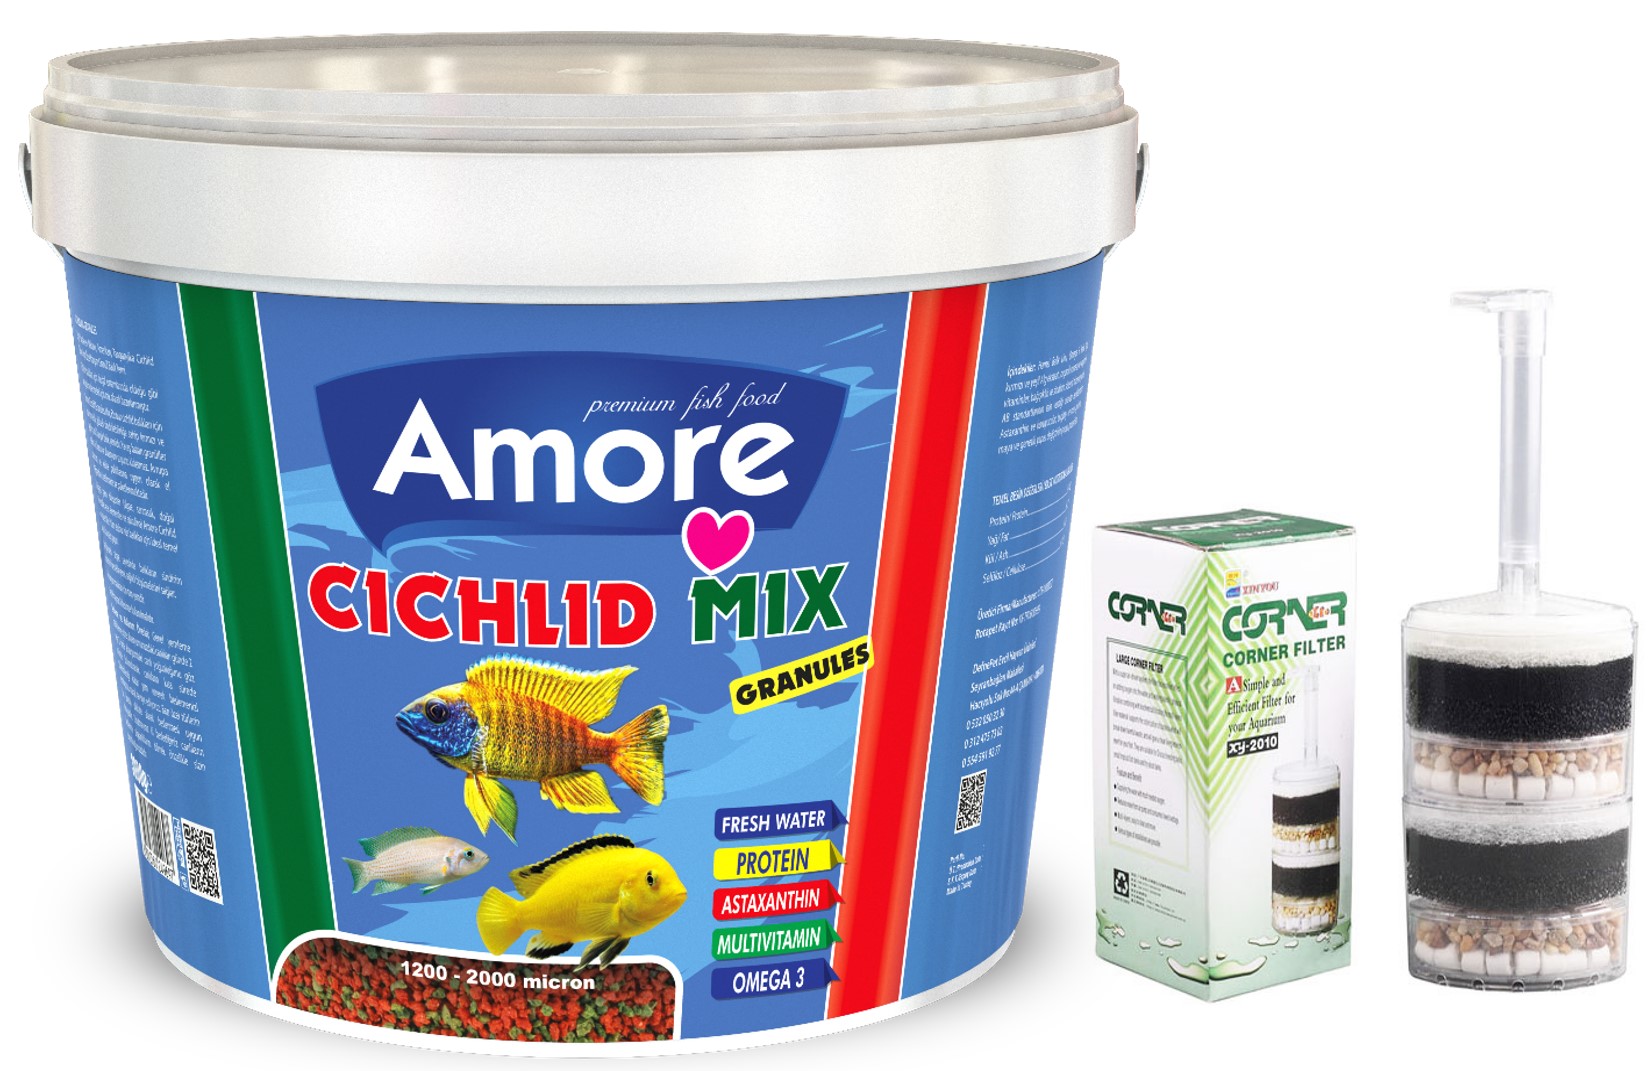 Amore Cichlid Mix Granules 3kg Kova Balık Yemi Ve Xy-2010 Köşe Filtre